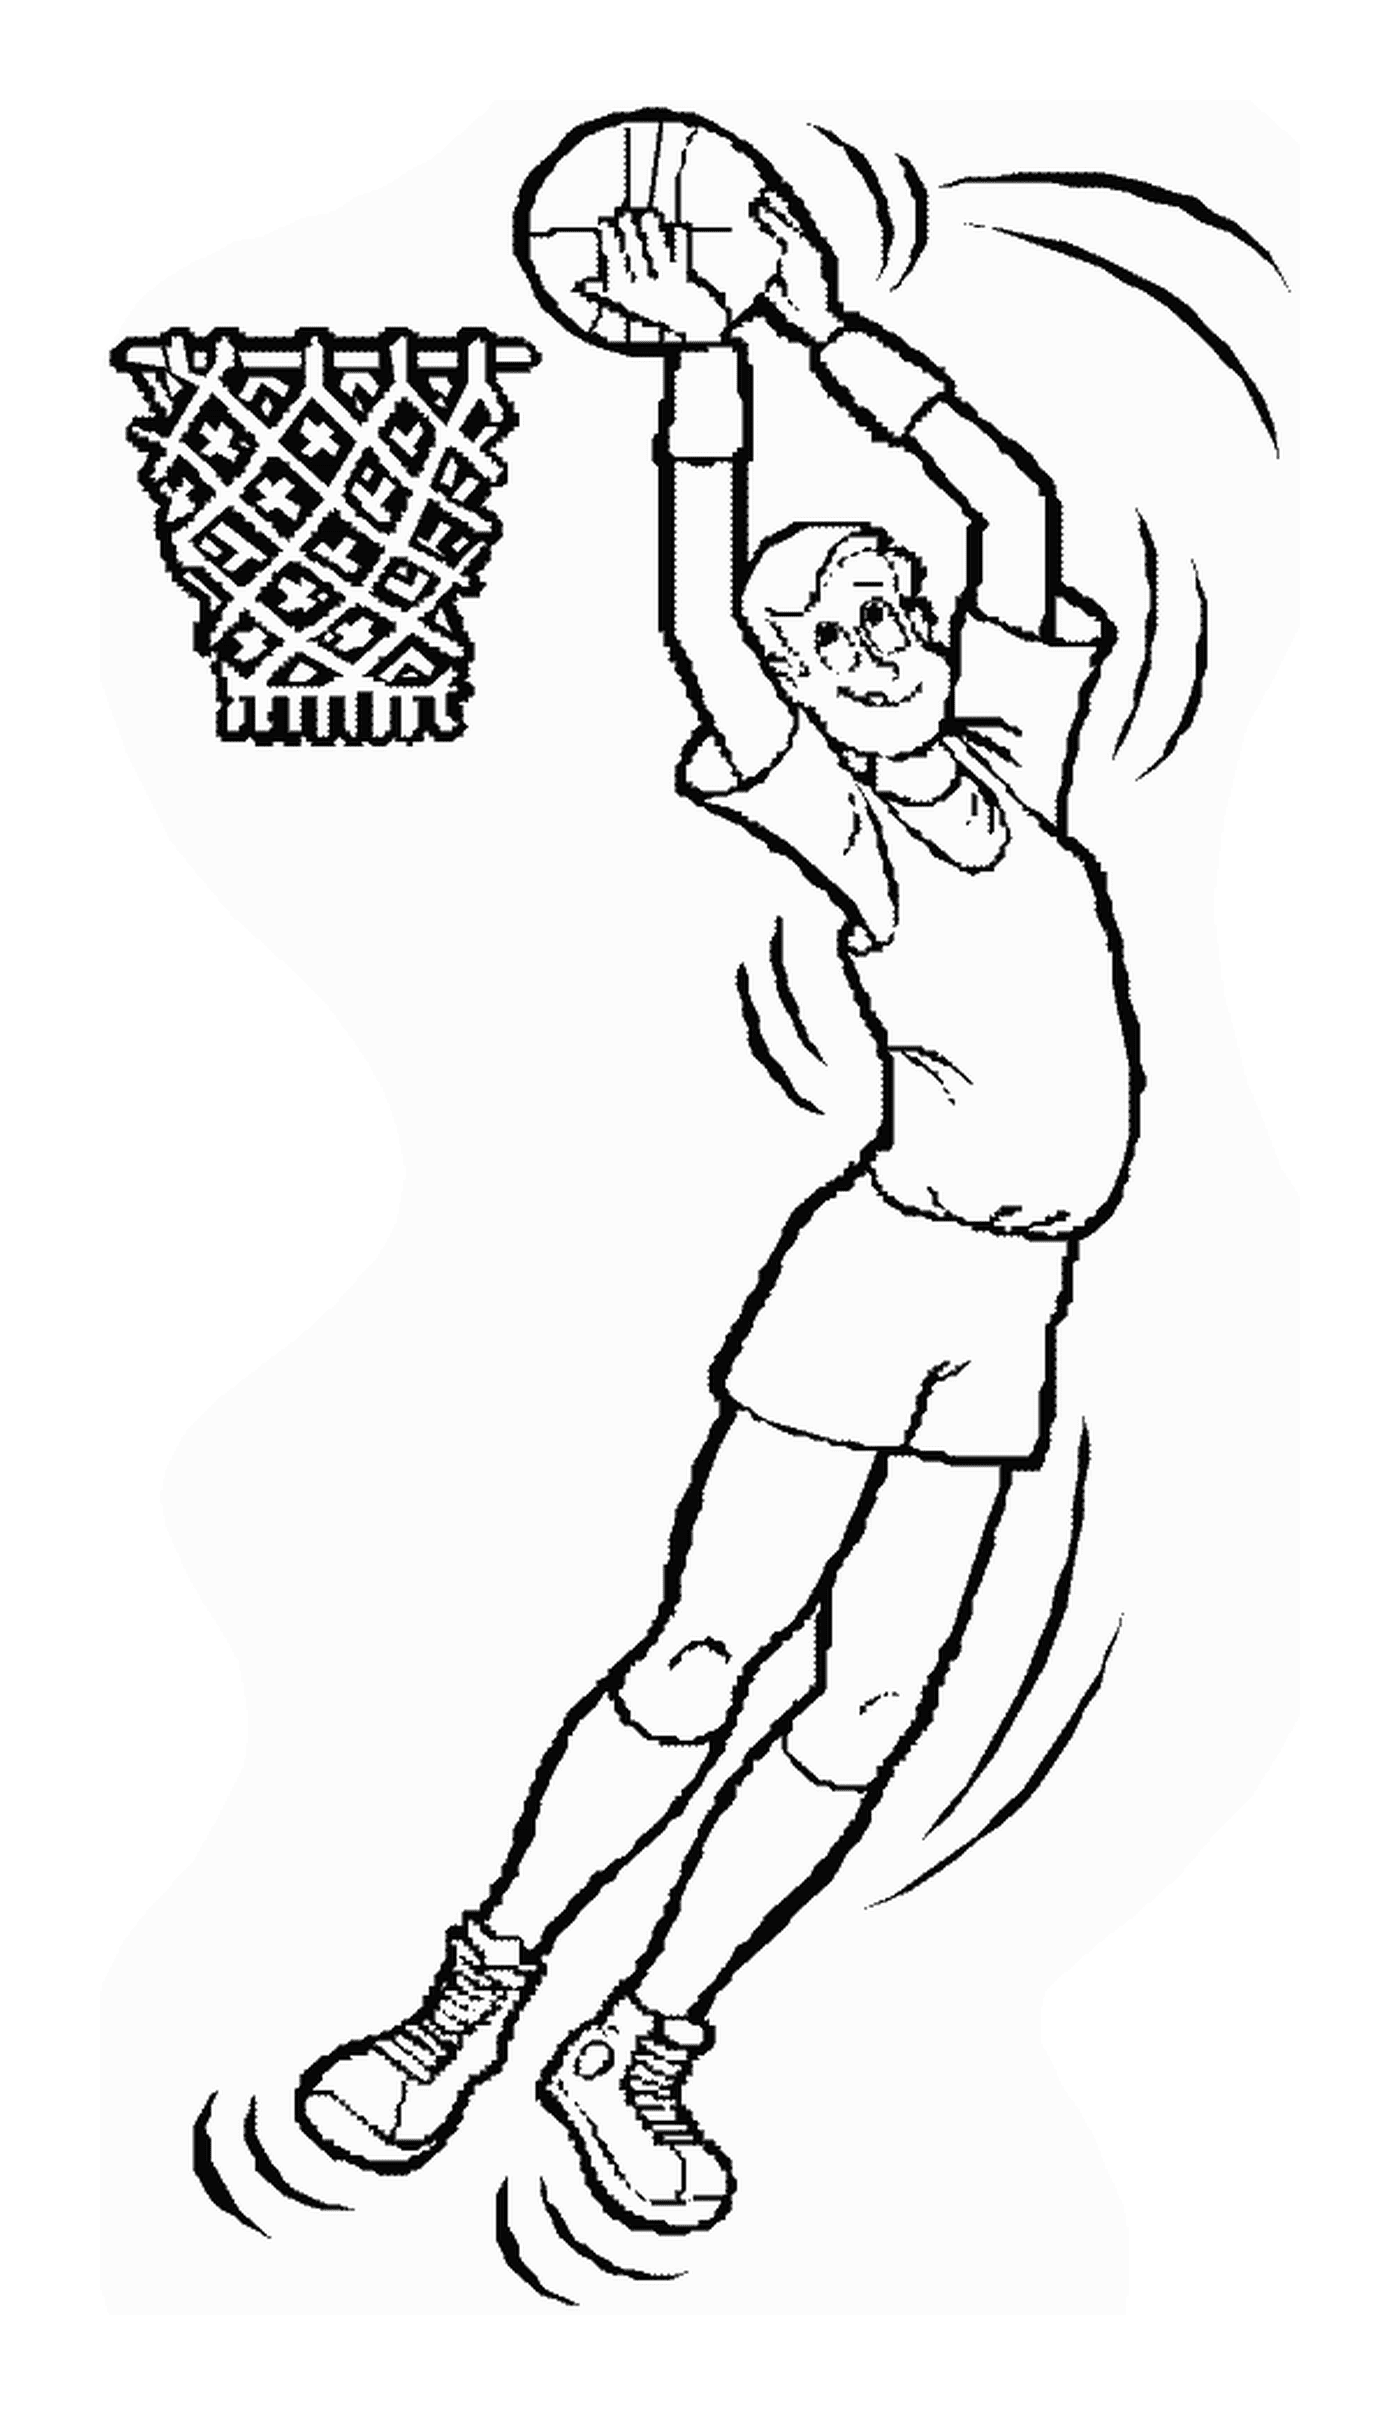  رجل يقفز لضرب كرة سلة 